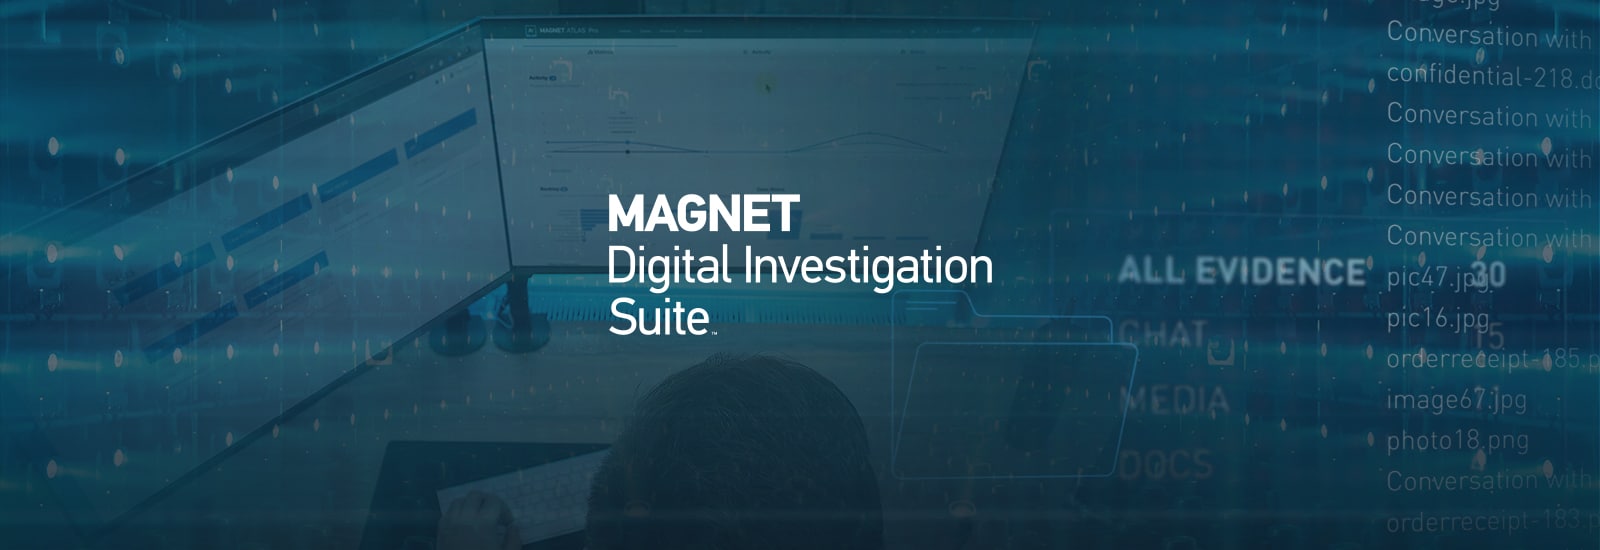 Decorative header image for the Magnet Digital Investigation Suite.